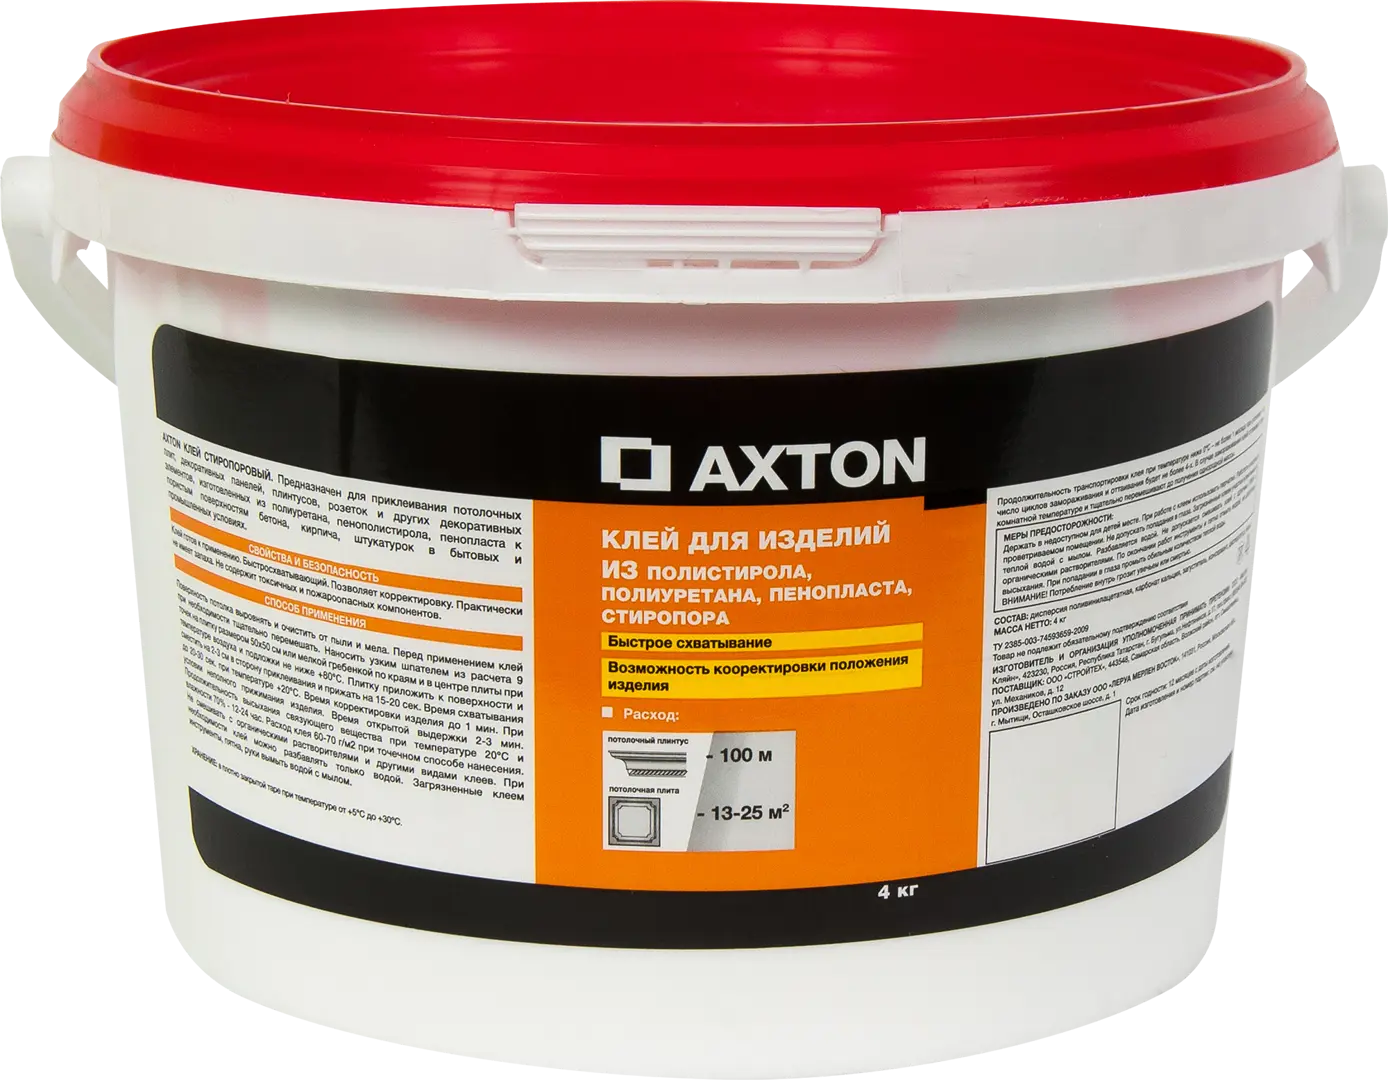 Клей Axton для потолочных изделий стиропоровый 4 кг клей стиропоровый для потолочных плит 1 5 кг 9 quelyd